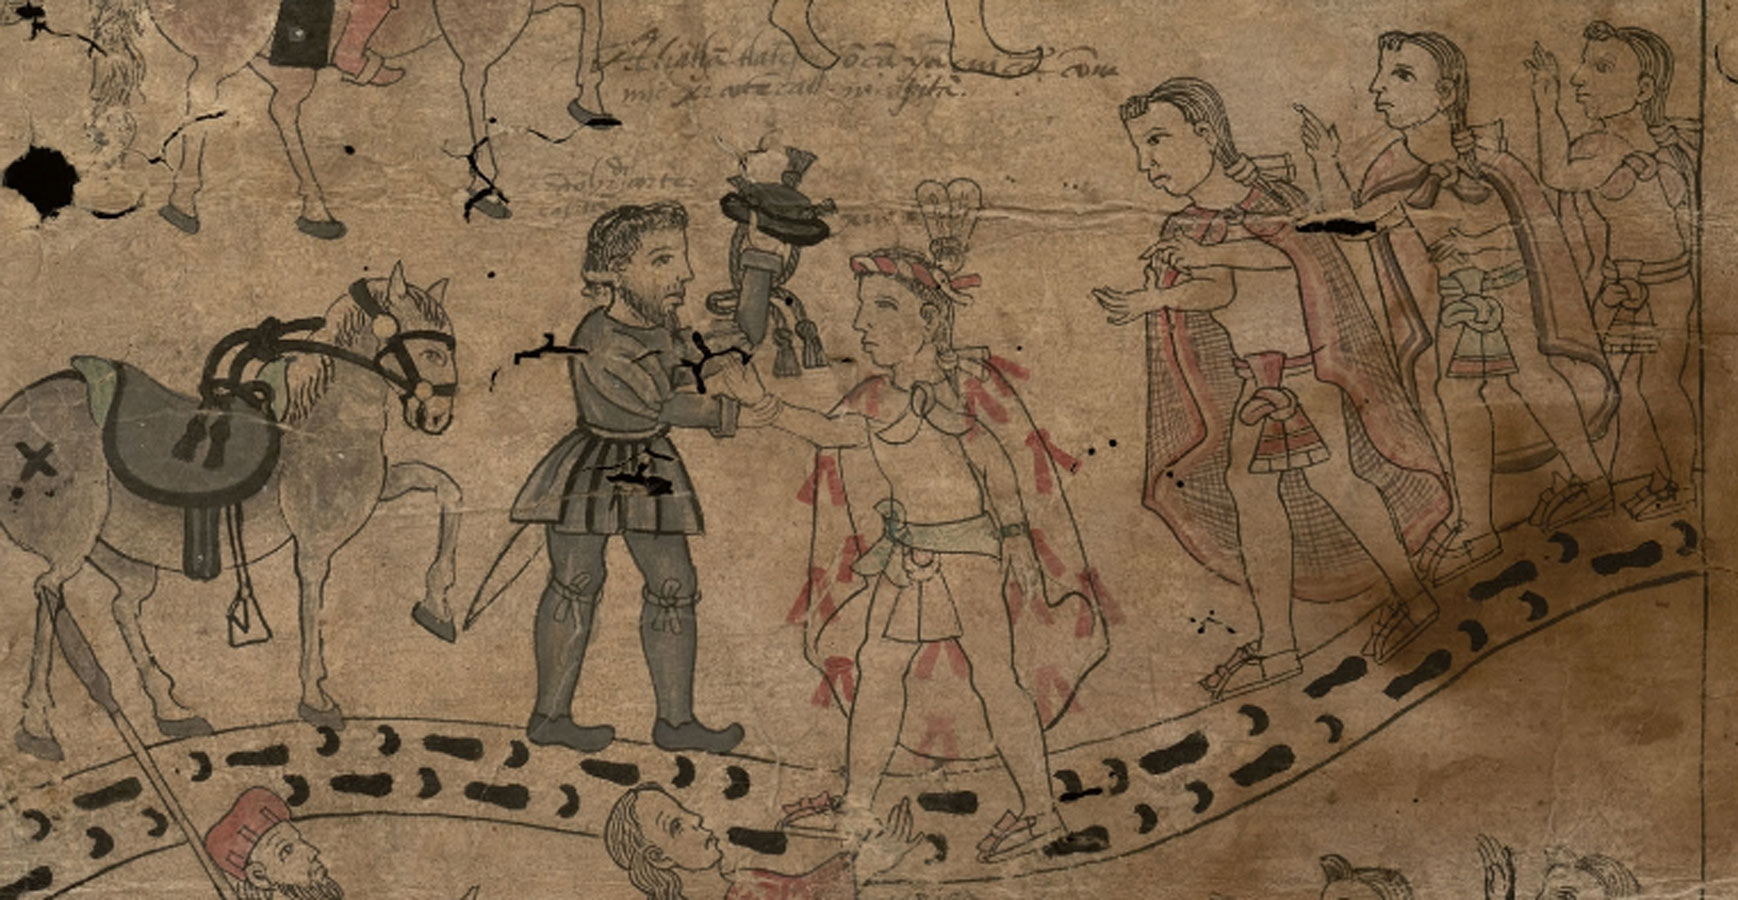 Encuentro de Xicoténcatl con Hernán Cortés, detalle, Lienzo de Tlaxcala, Fragmentos de Texas . 1530-1540